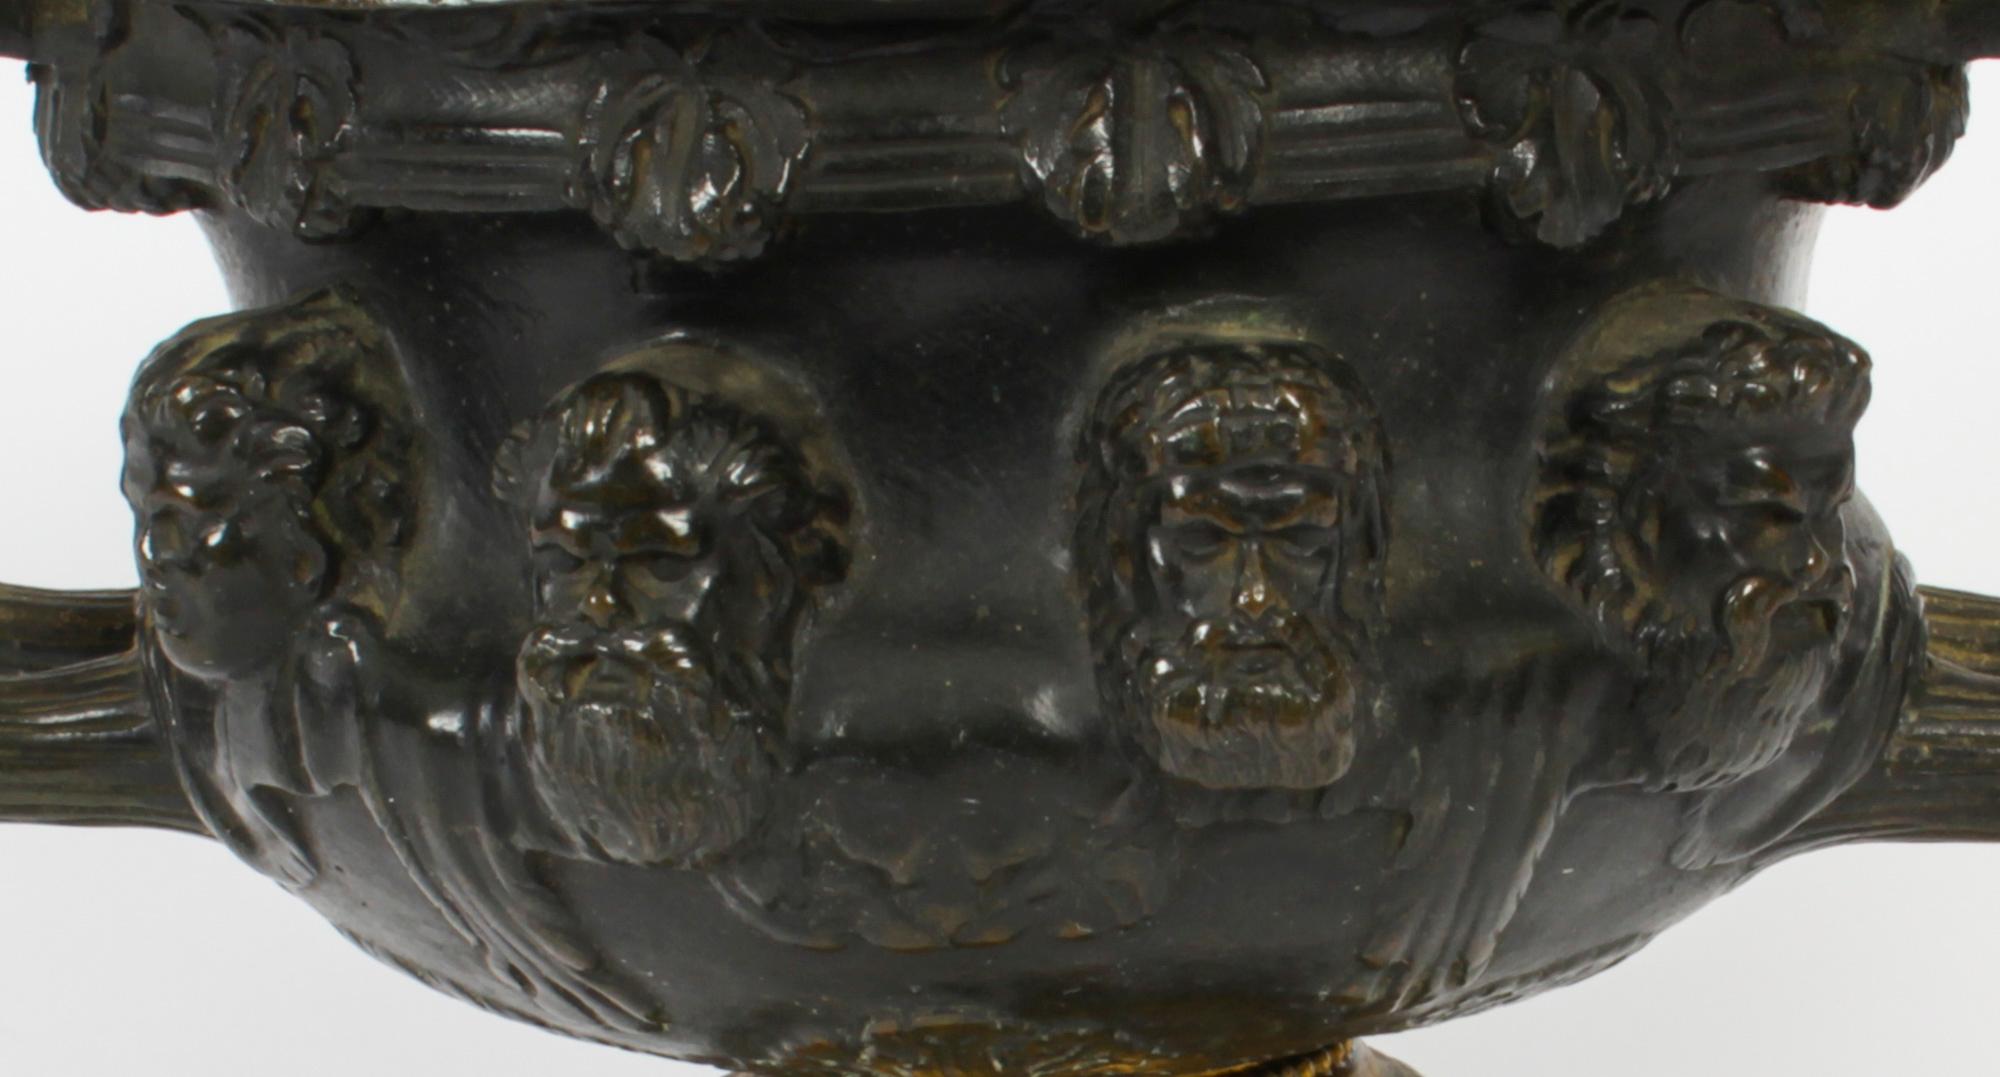 Il s'agit d'une belle urne française ancienne Grand Tour en bronze patiné foncé et ormolu avec doublure en ormolu, datant de 1850.

Ce superbe bronze est superbement moulé et présente une élégante patine brune. L'urne présente un bord en forme